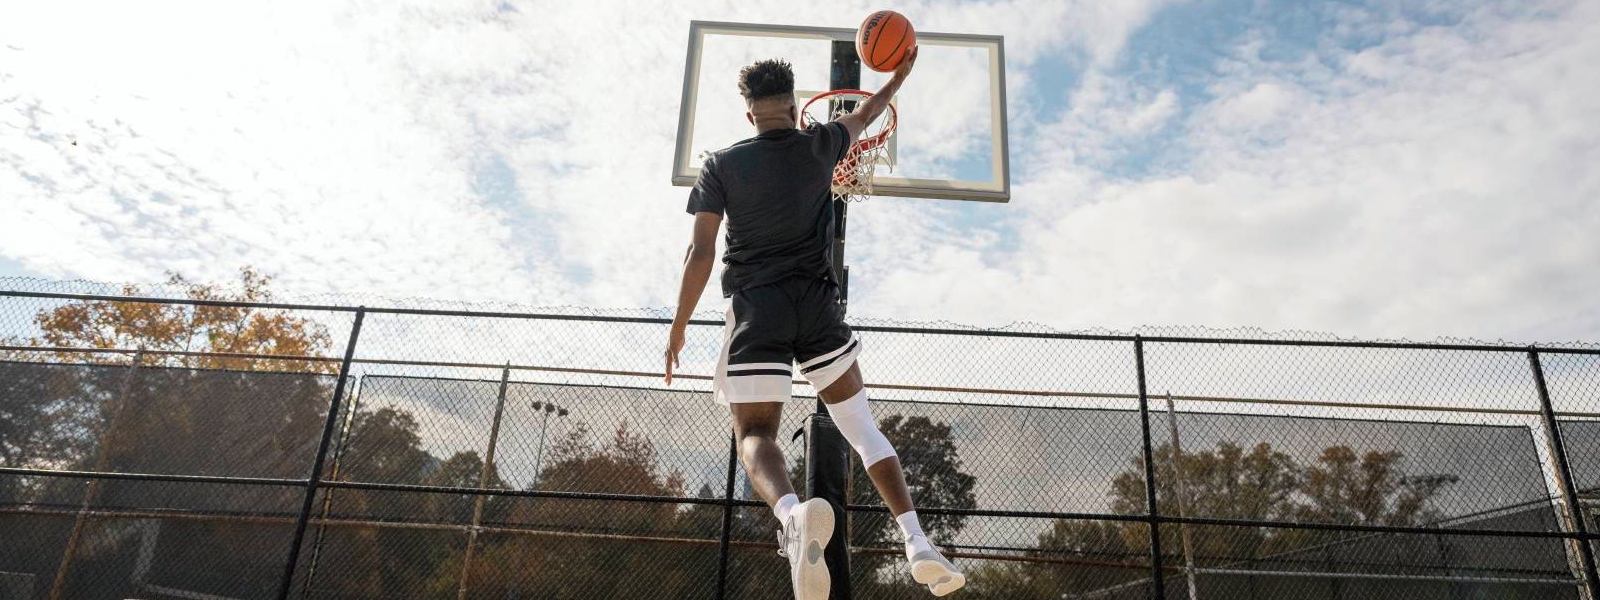 Basketbalspeler springt op een vrije ruimte naar de mand en draagt ​​een witte knieband